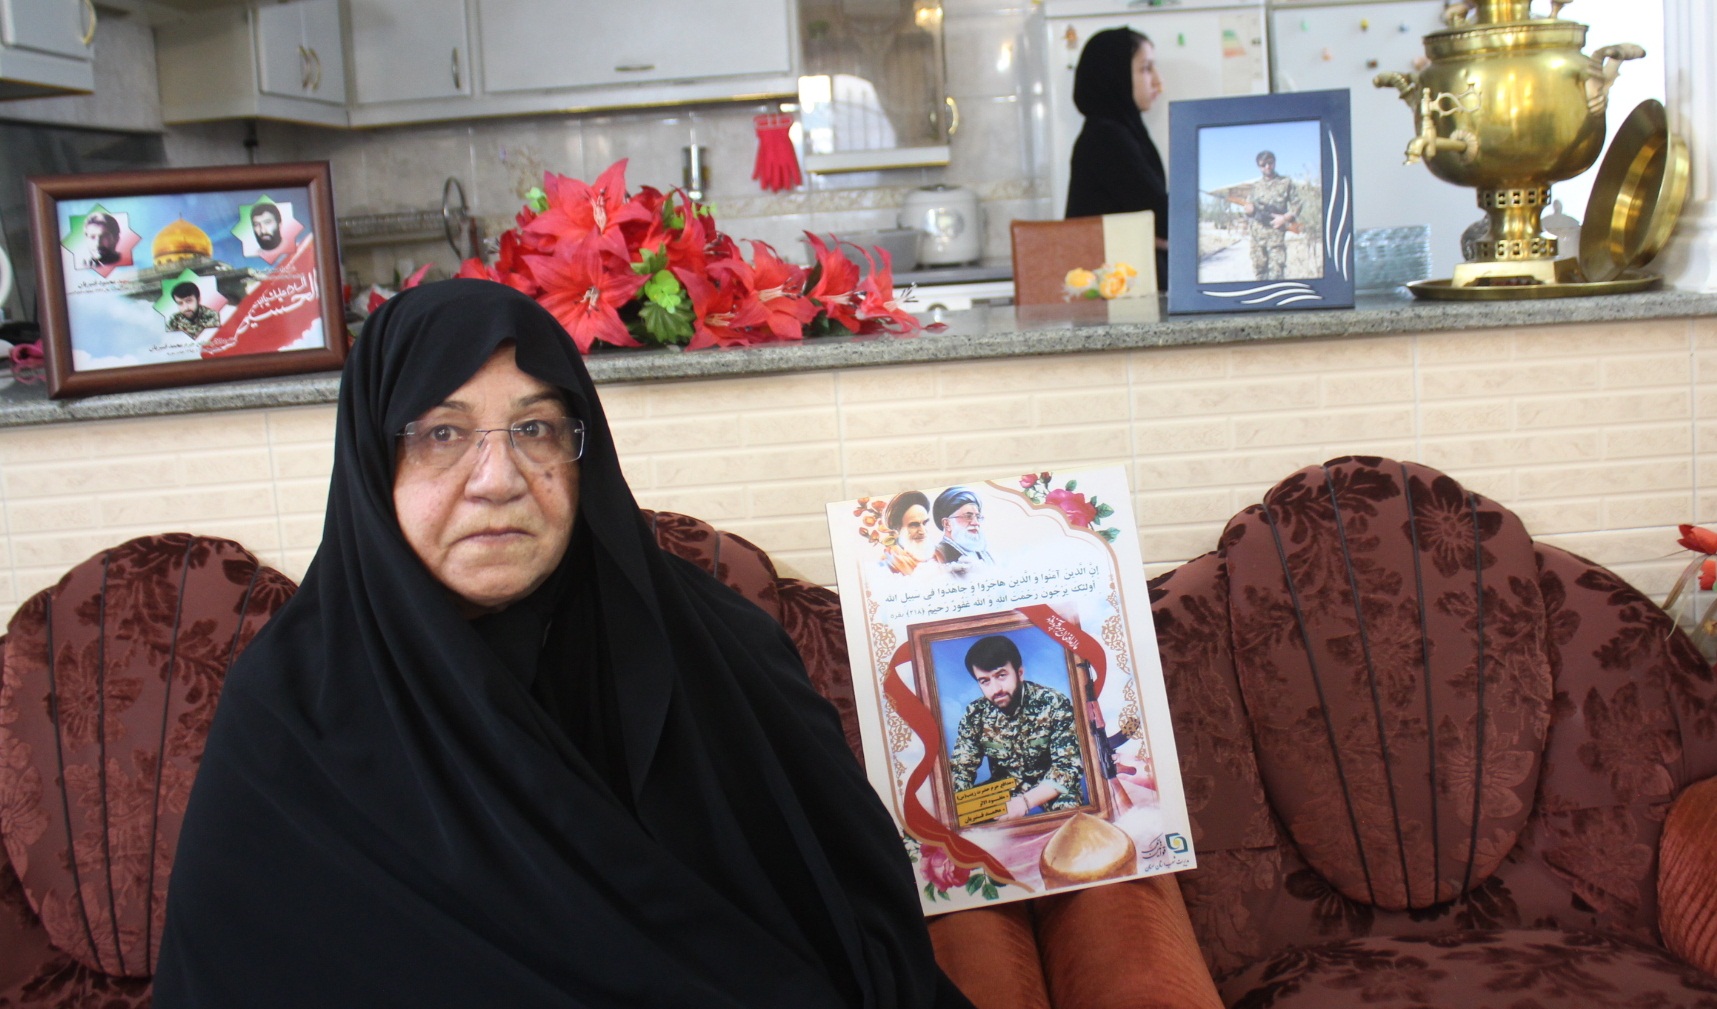 عشق شهید محمد قنبریان به شهادت و دعوت مادر به صبوری